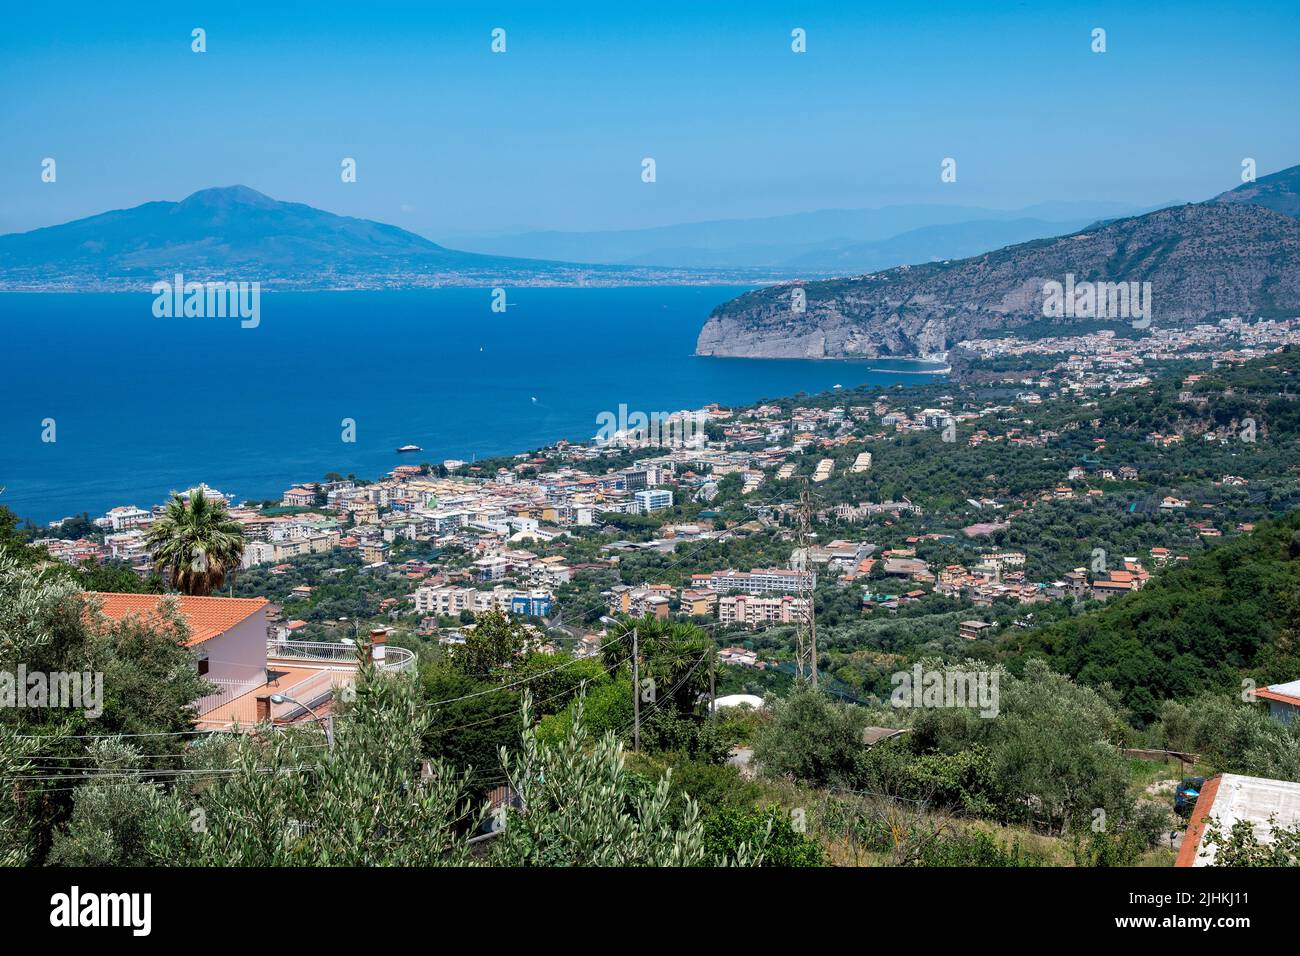 Vistas de Sorrento Una ciudad costera en el suroeste de Italia, frente a la Bahía de Nápoles en la Península Sorrentina. Italia. Foto de stock